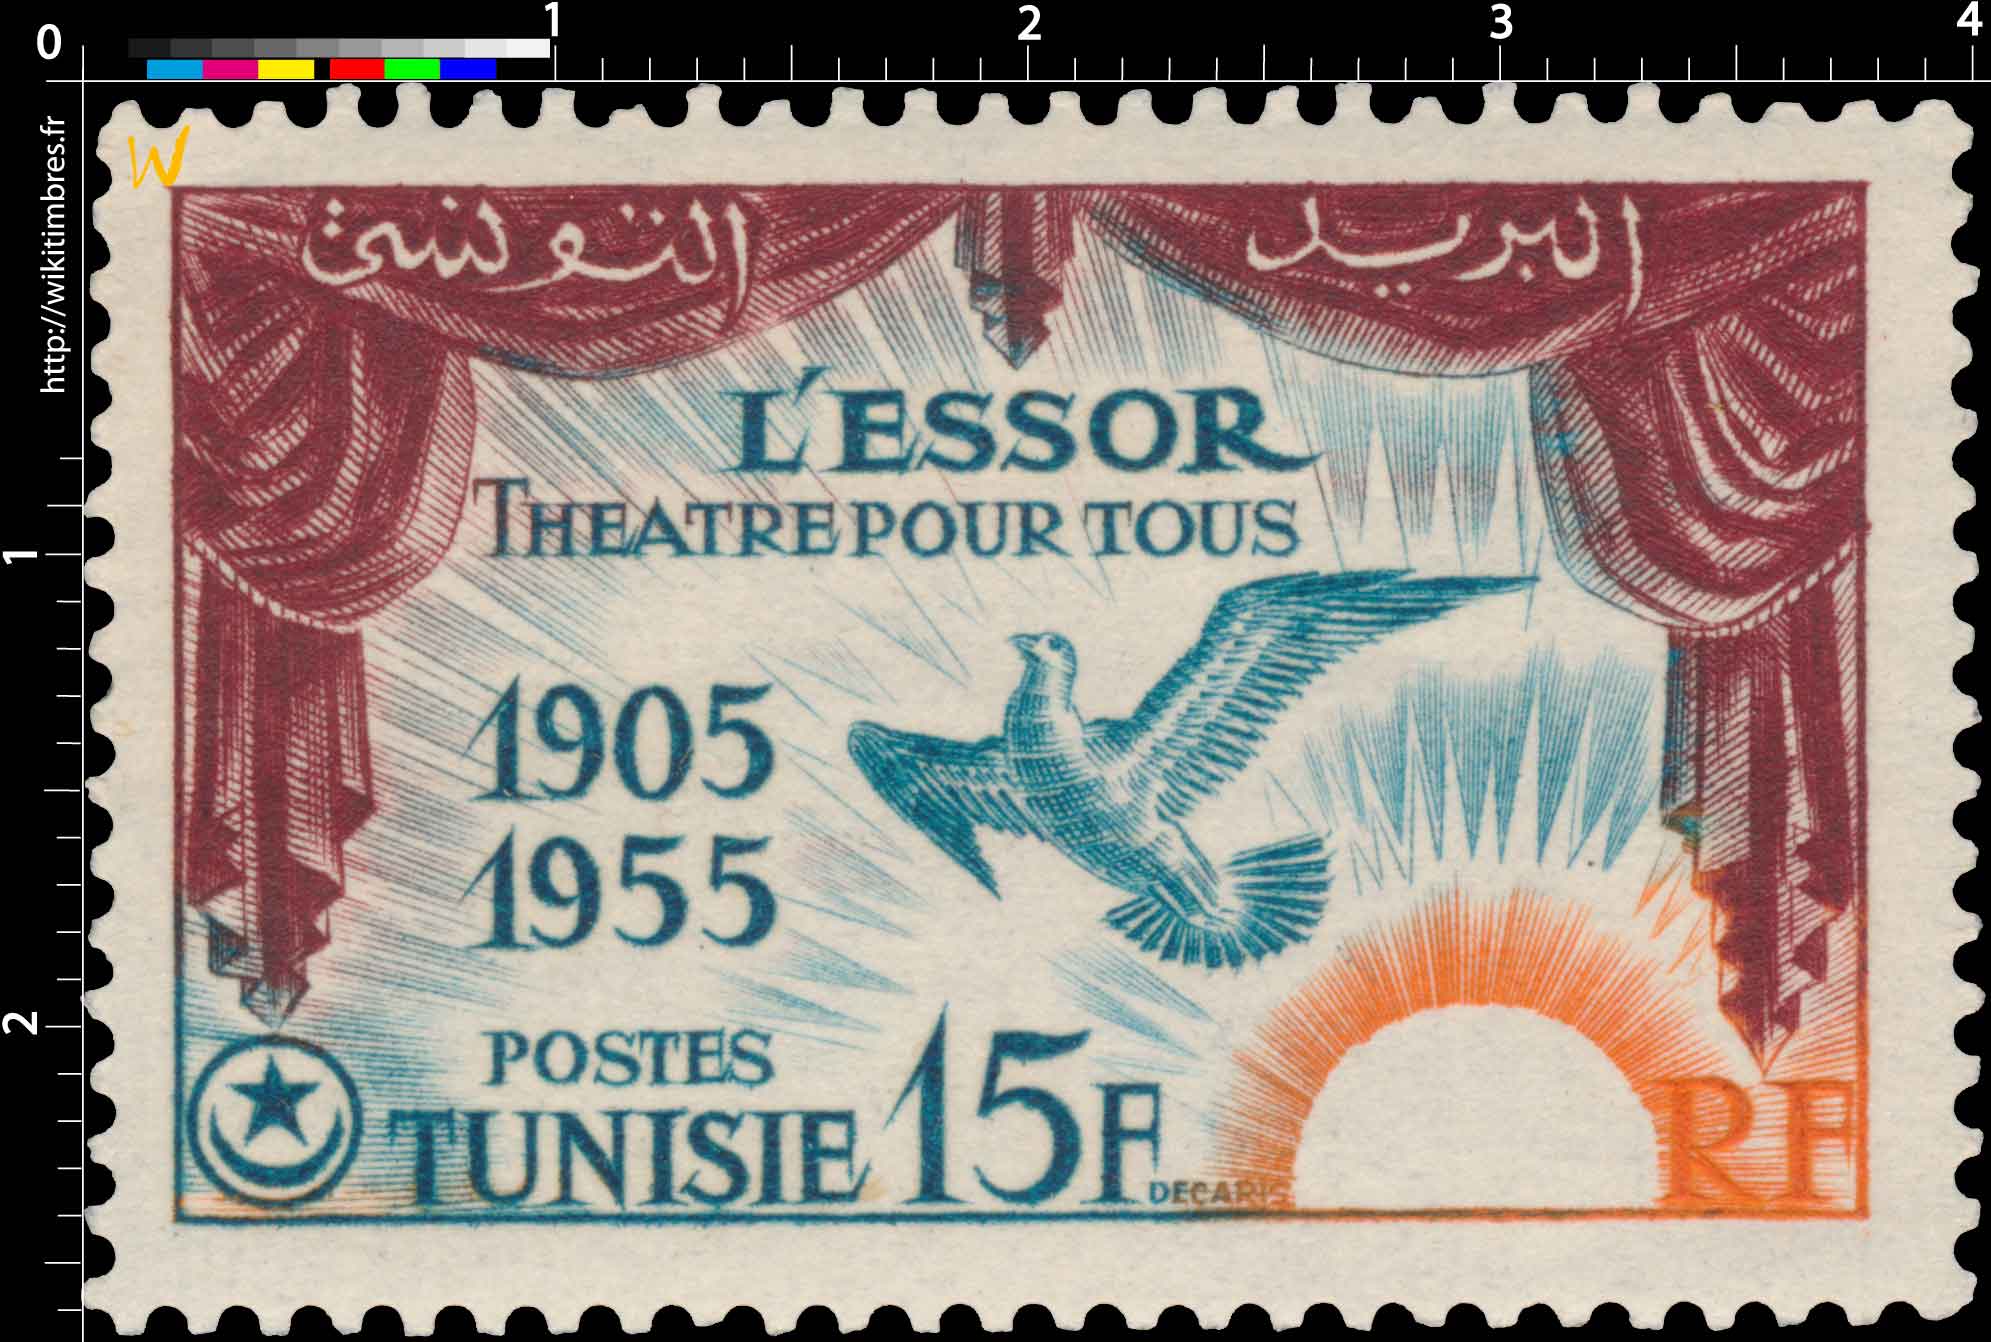 Tunisie - Centenaire de l'Essor - le théâtre pour tous